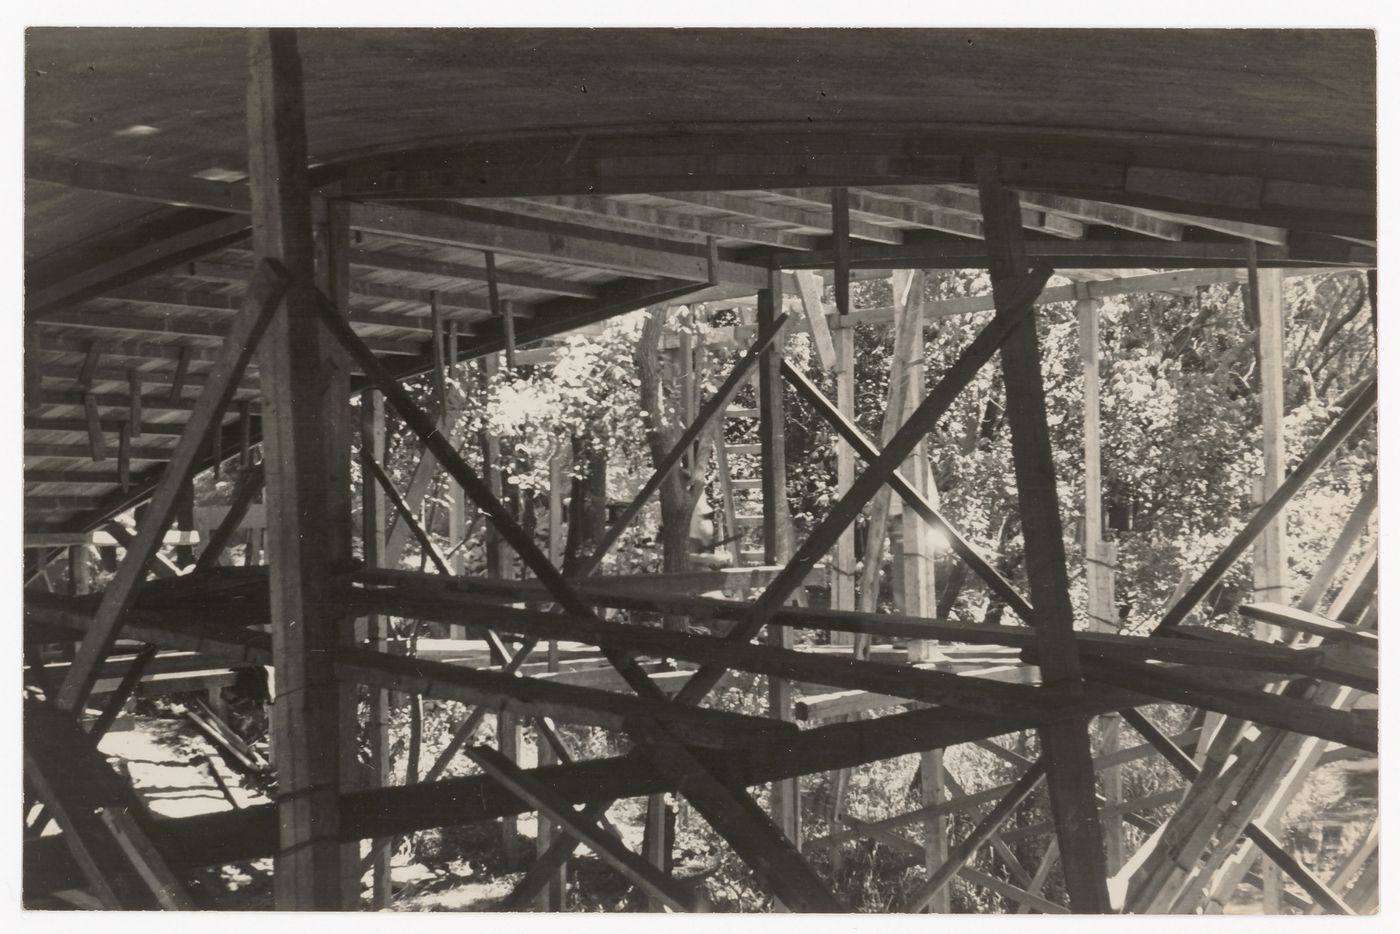 Photograph of the bridge structure under construction for Casa sobre el arroyo, Mar del Plata, Argentina